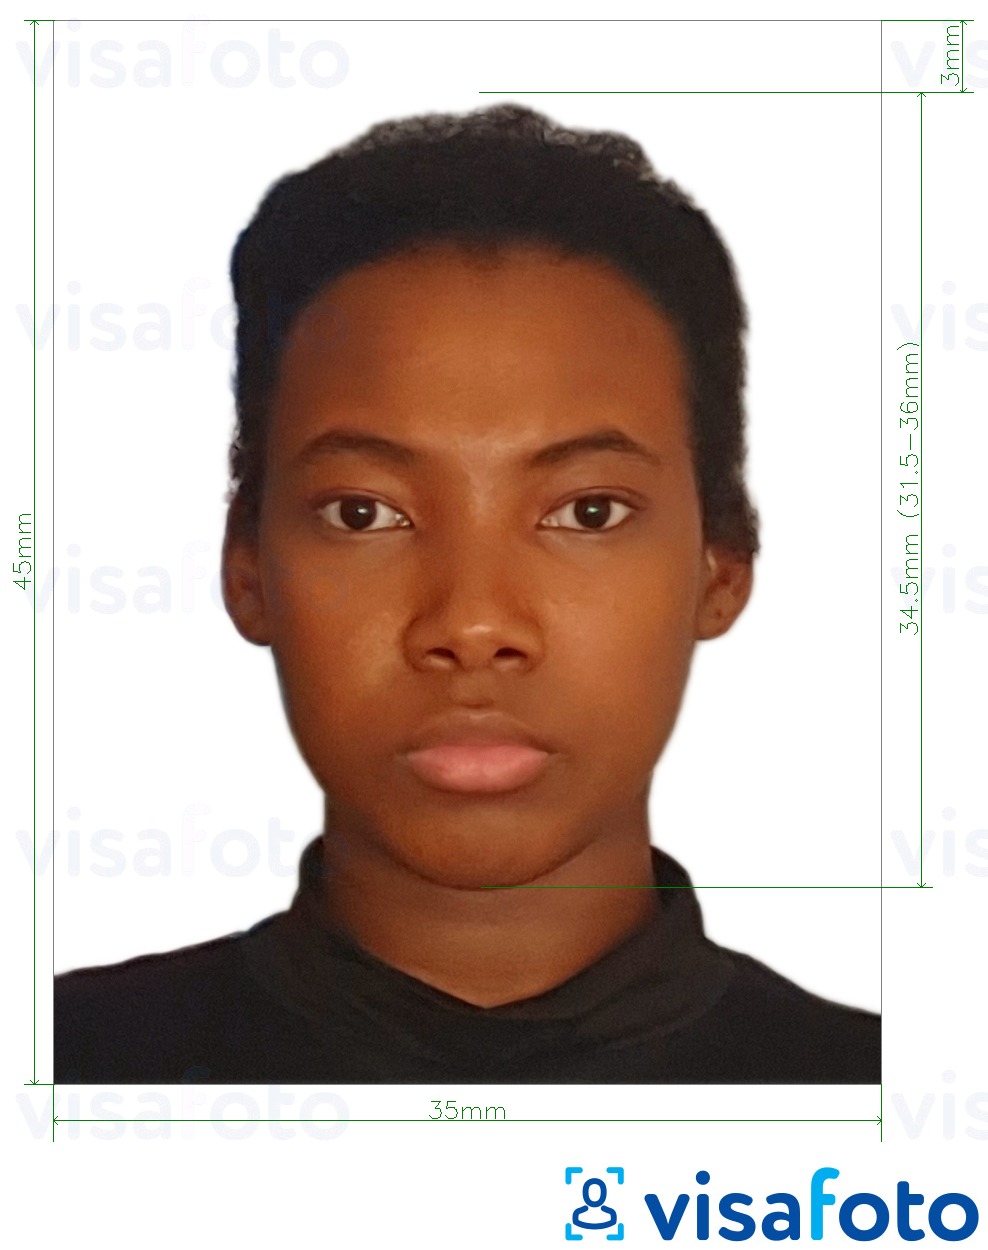 نمونه ی یک عکس برای پاسپورت فیجی 35x45 میلی متر (3.5x4.5 سانتی متر) با مشخصات دقیق